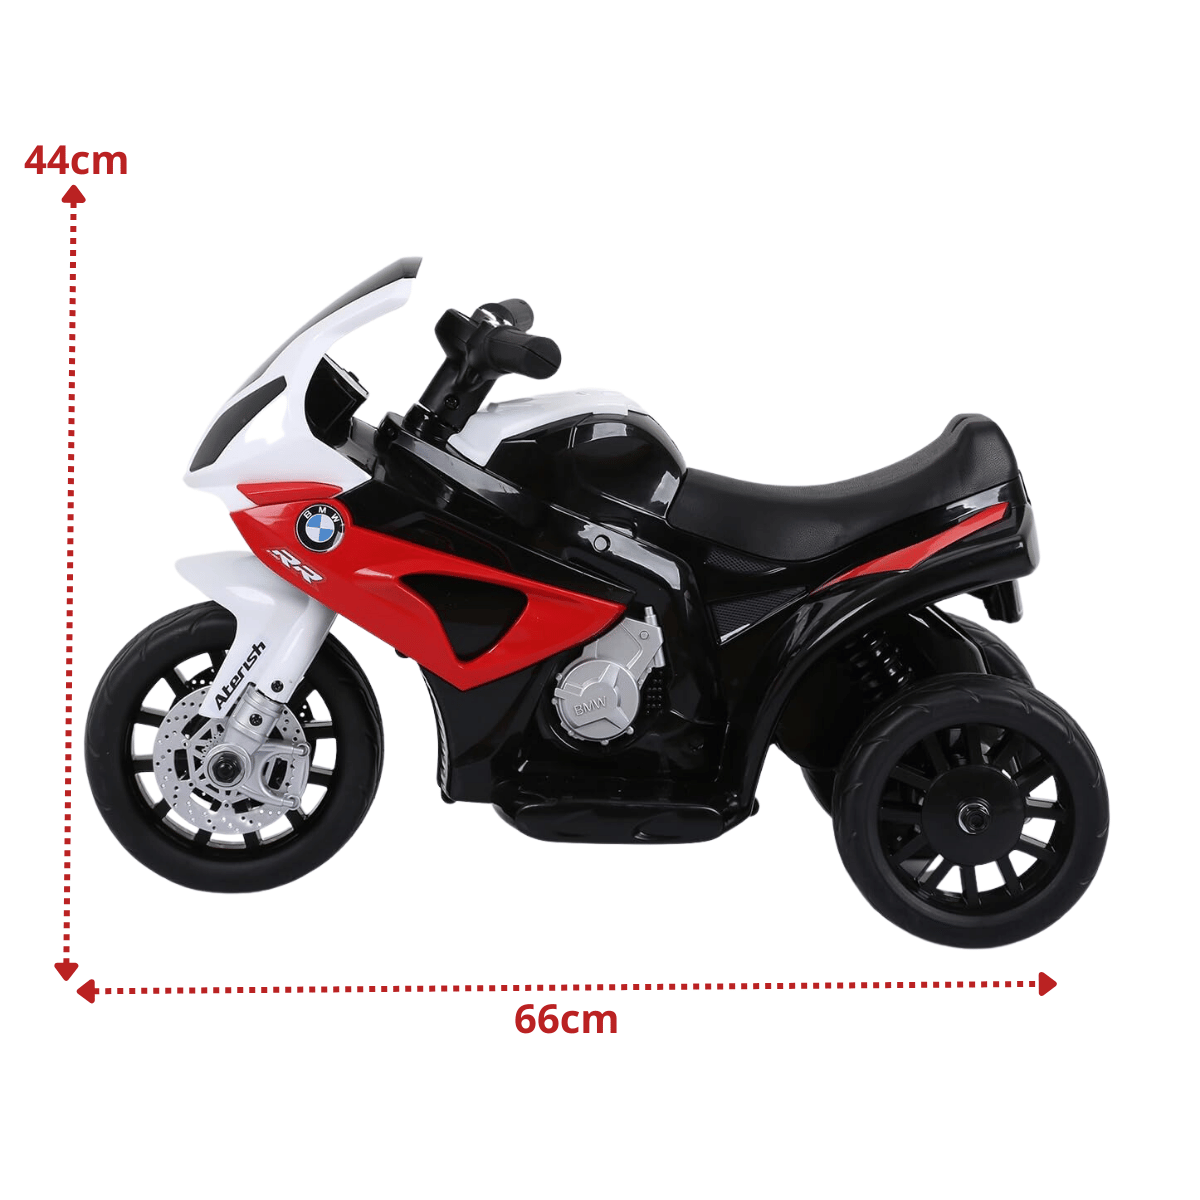 Mini Moto Triciclo Elétrica Infantil Bmw S1000rr Vermelha Esportiva 6v Zippy Toys - 2